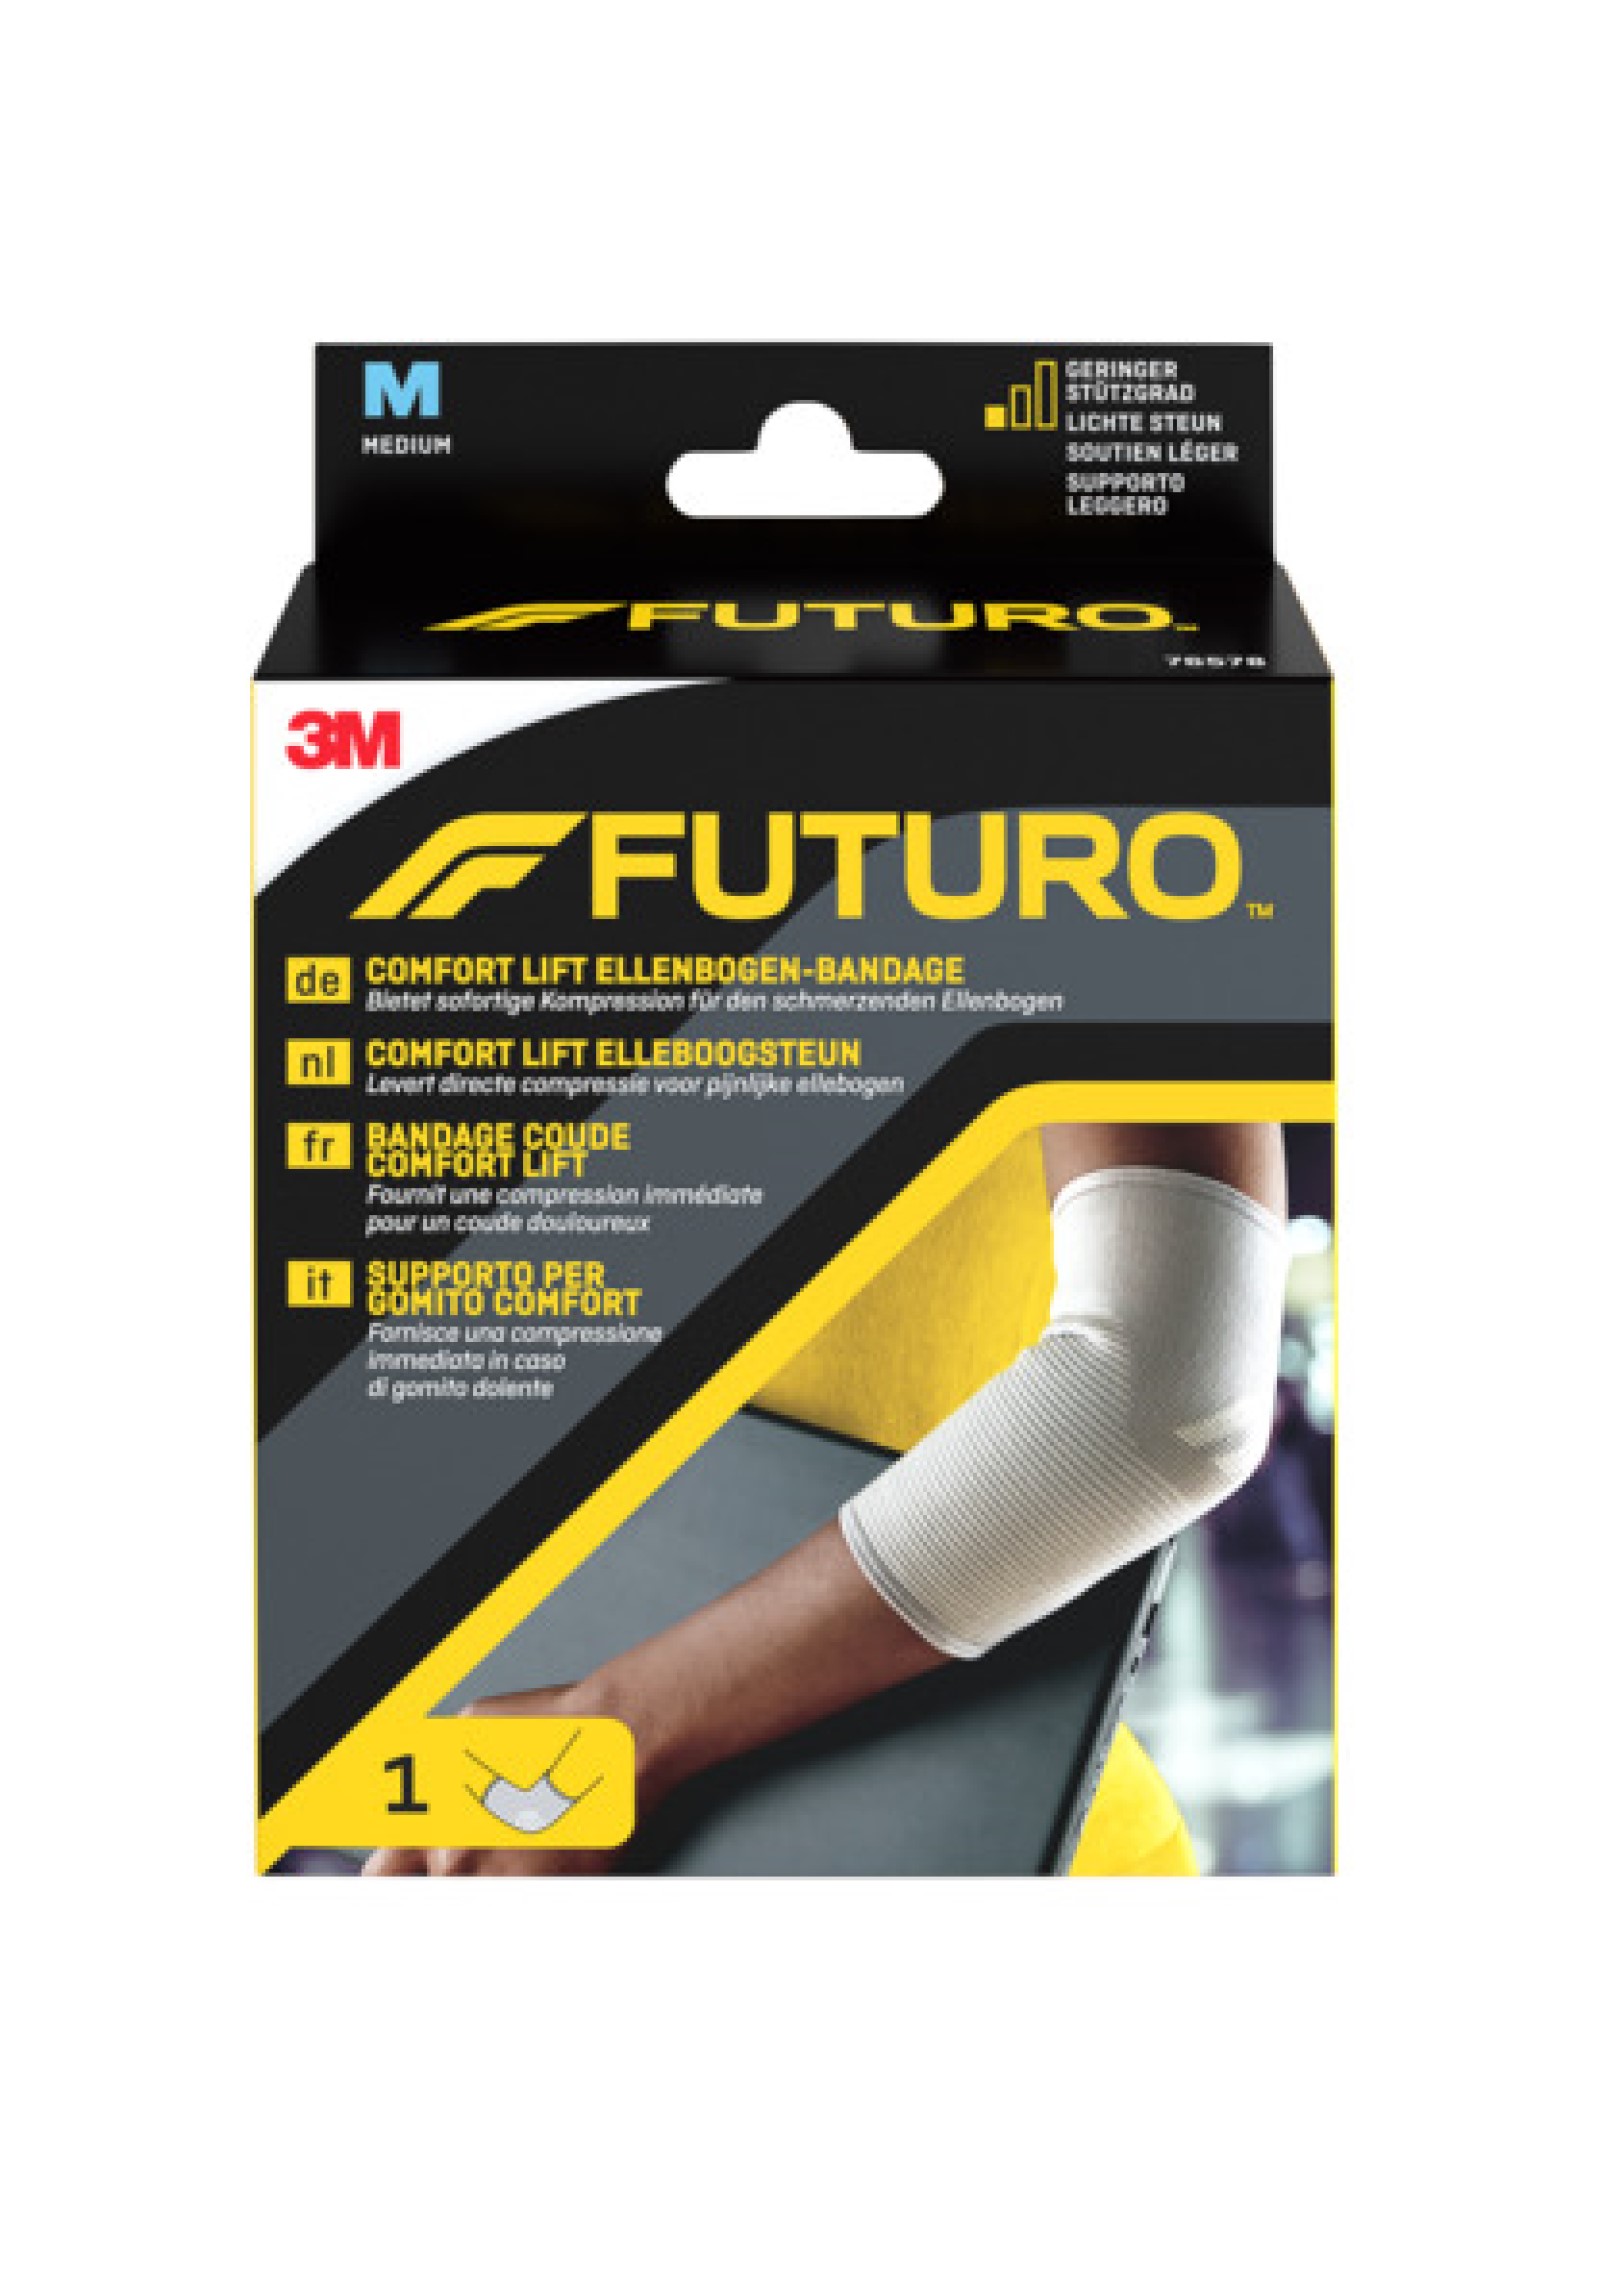 FUTURO™ Comfort Lift Ellenbogen-Bandage 76578, M (25.4 - 27.9 cm)